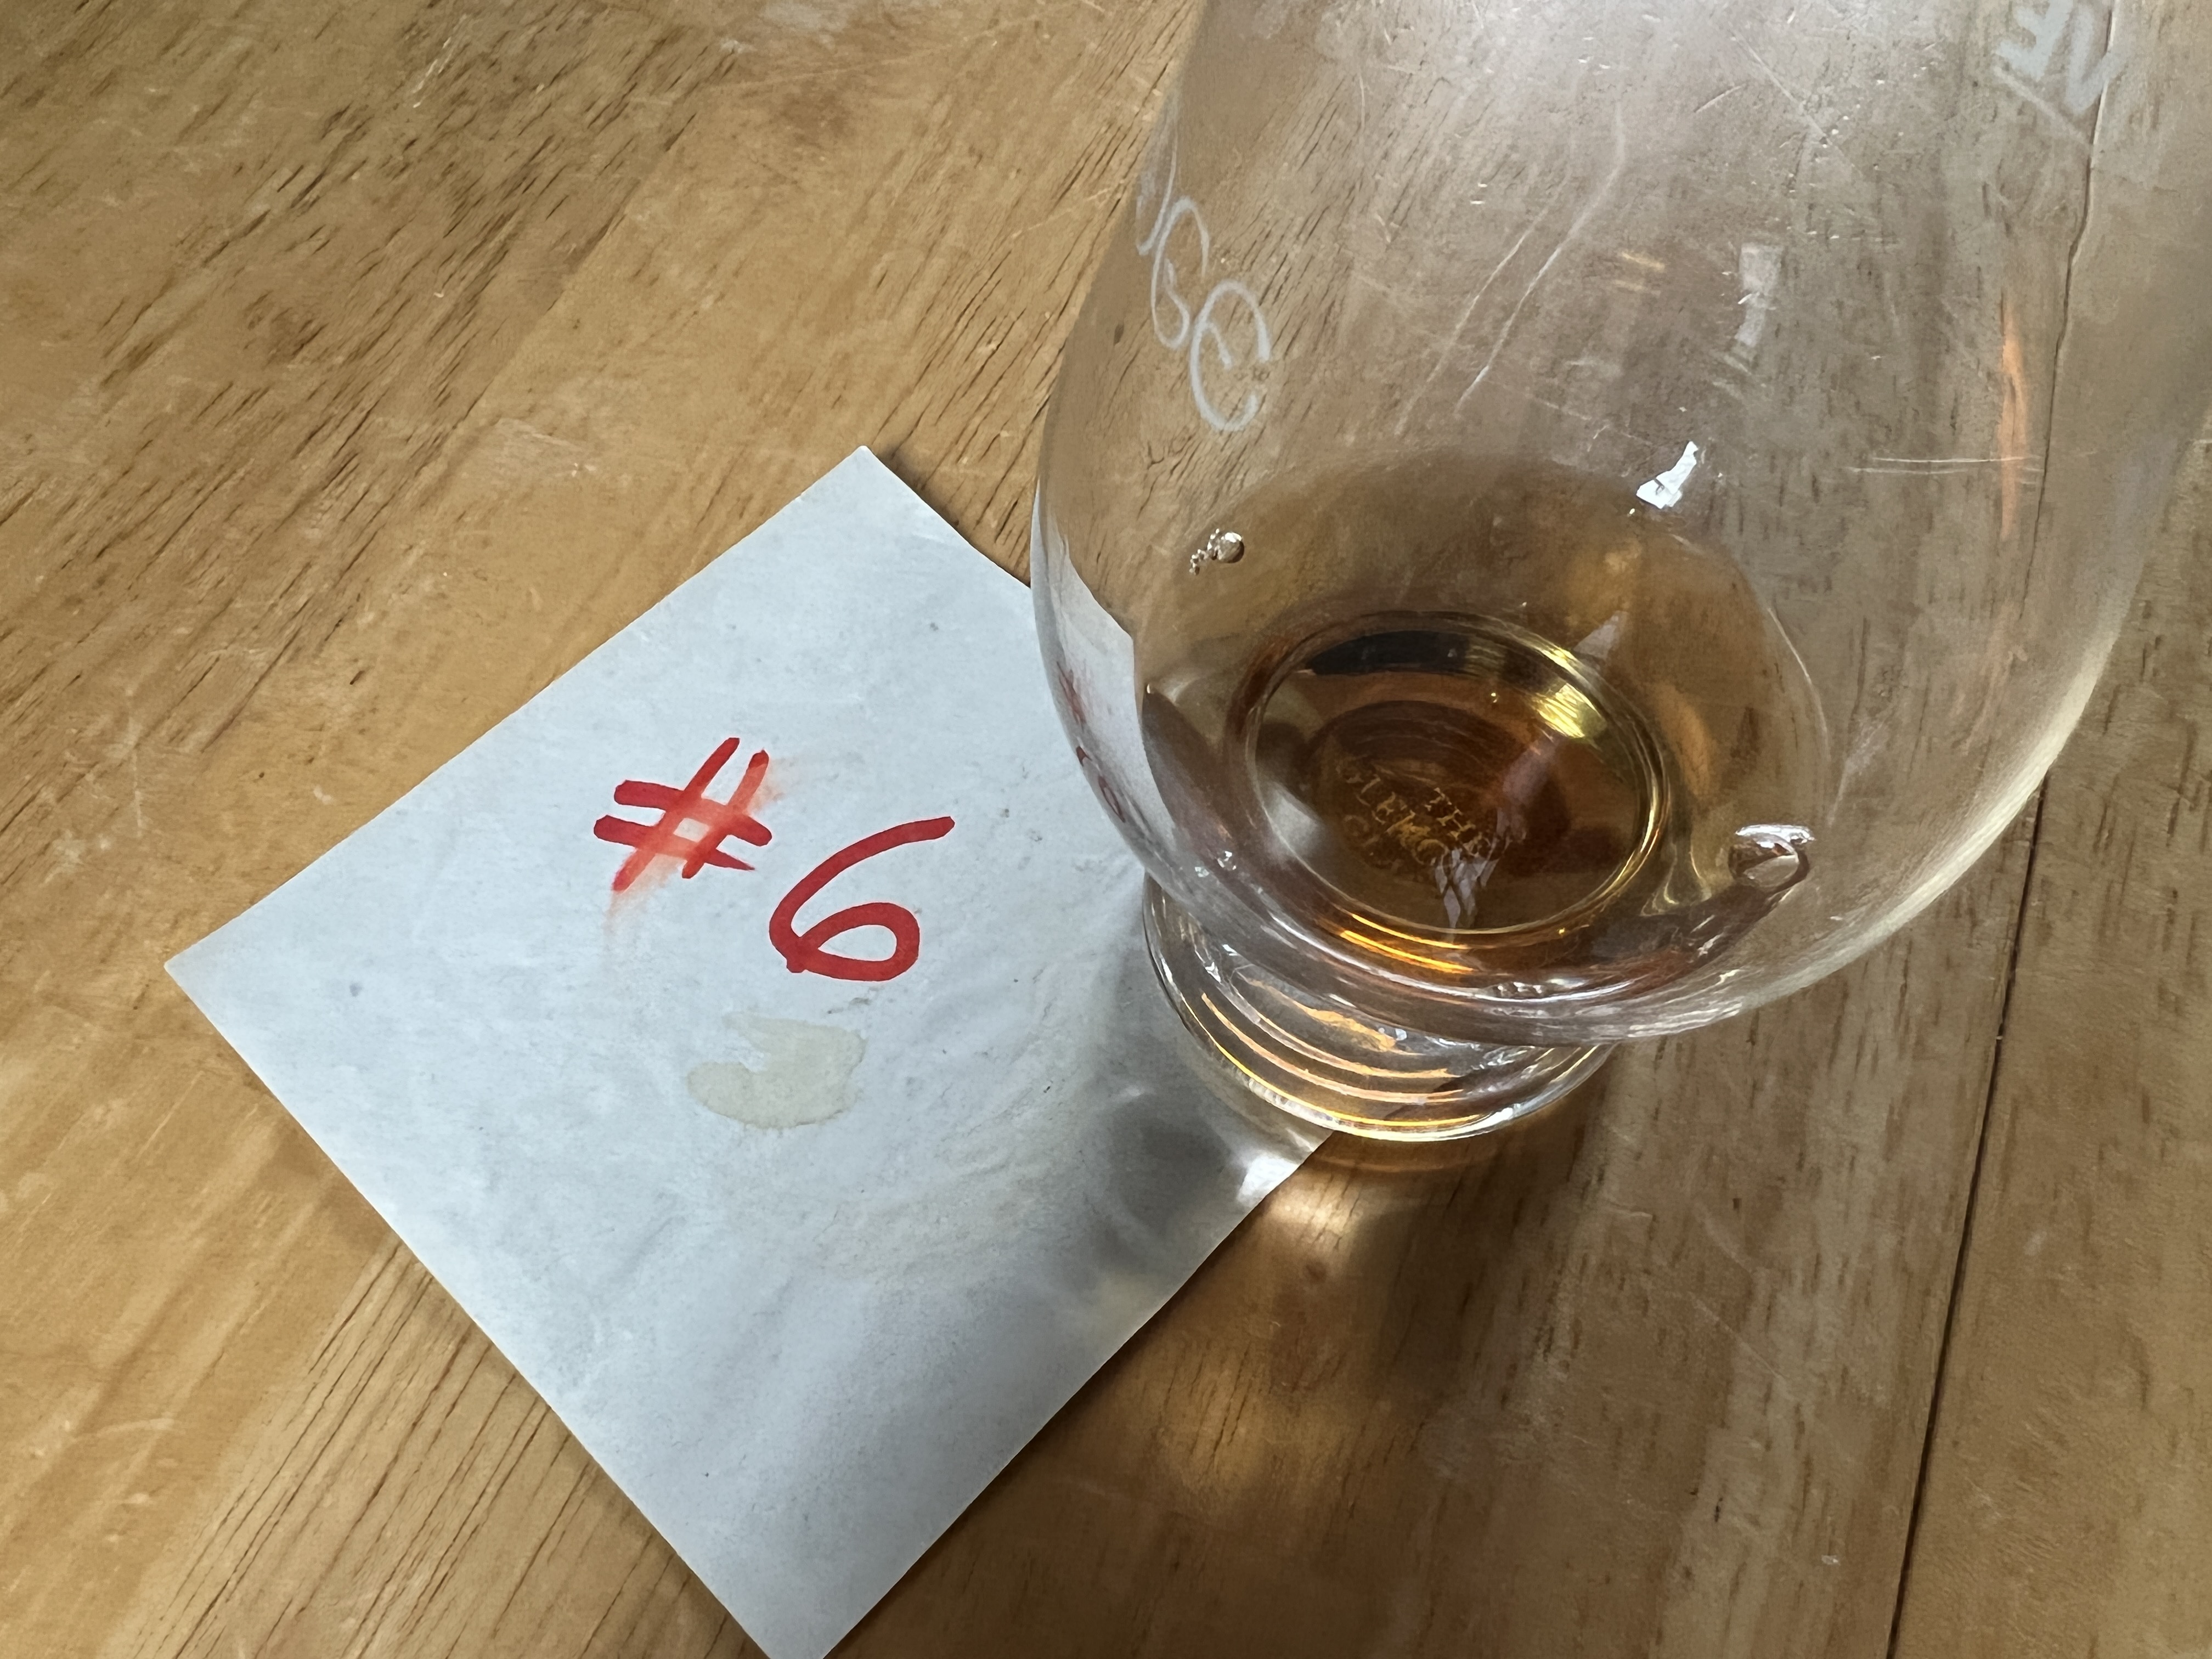 Single Malt Scotch Whisky